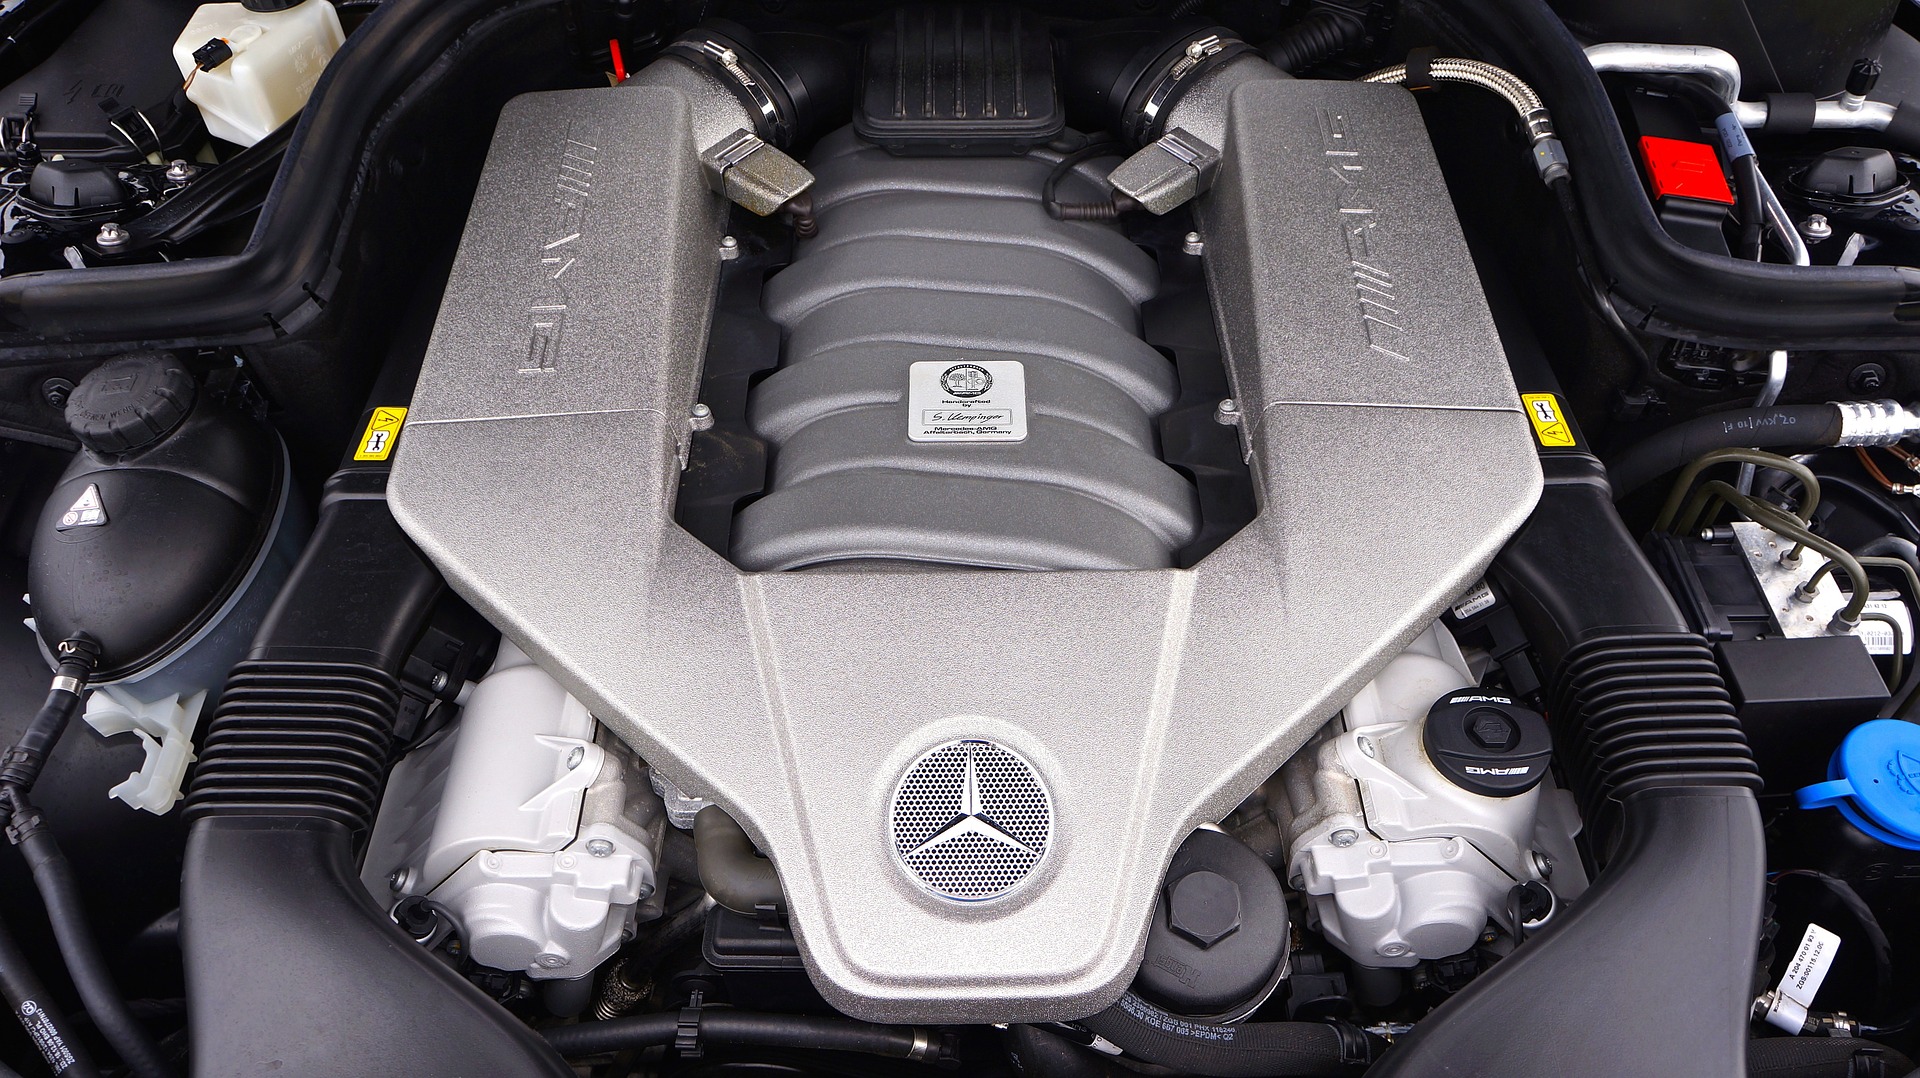 Dieselmotor OM 642: Mercedes-Motor im Abgasskandal